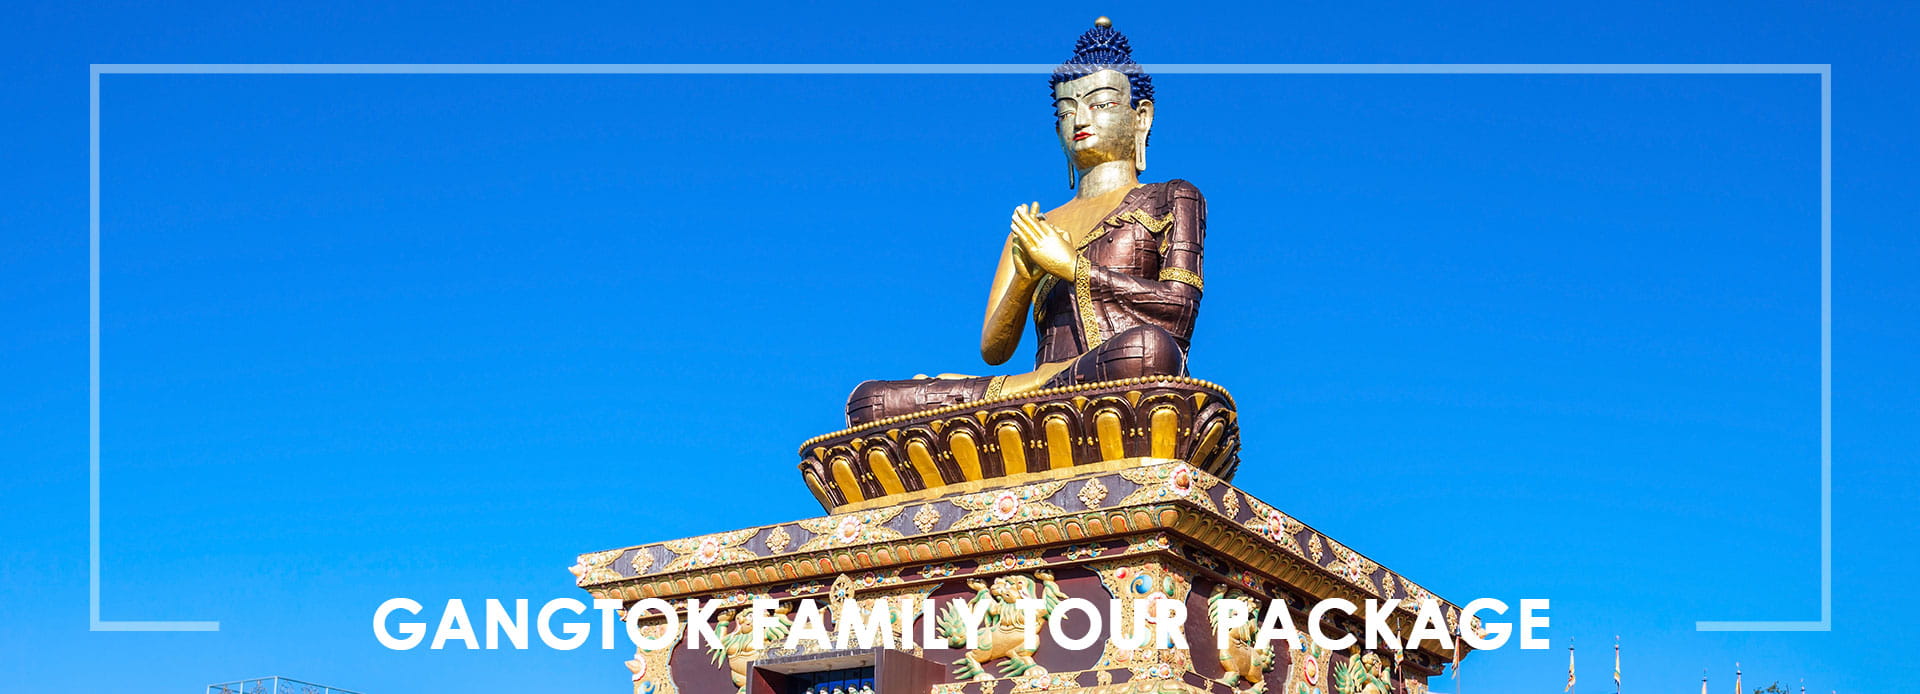  Gangtok Family Tour Package - Dream Destination